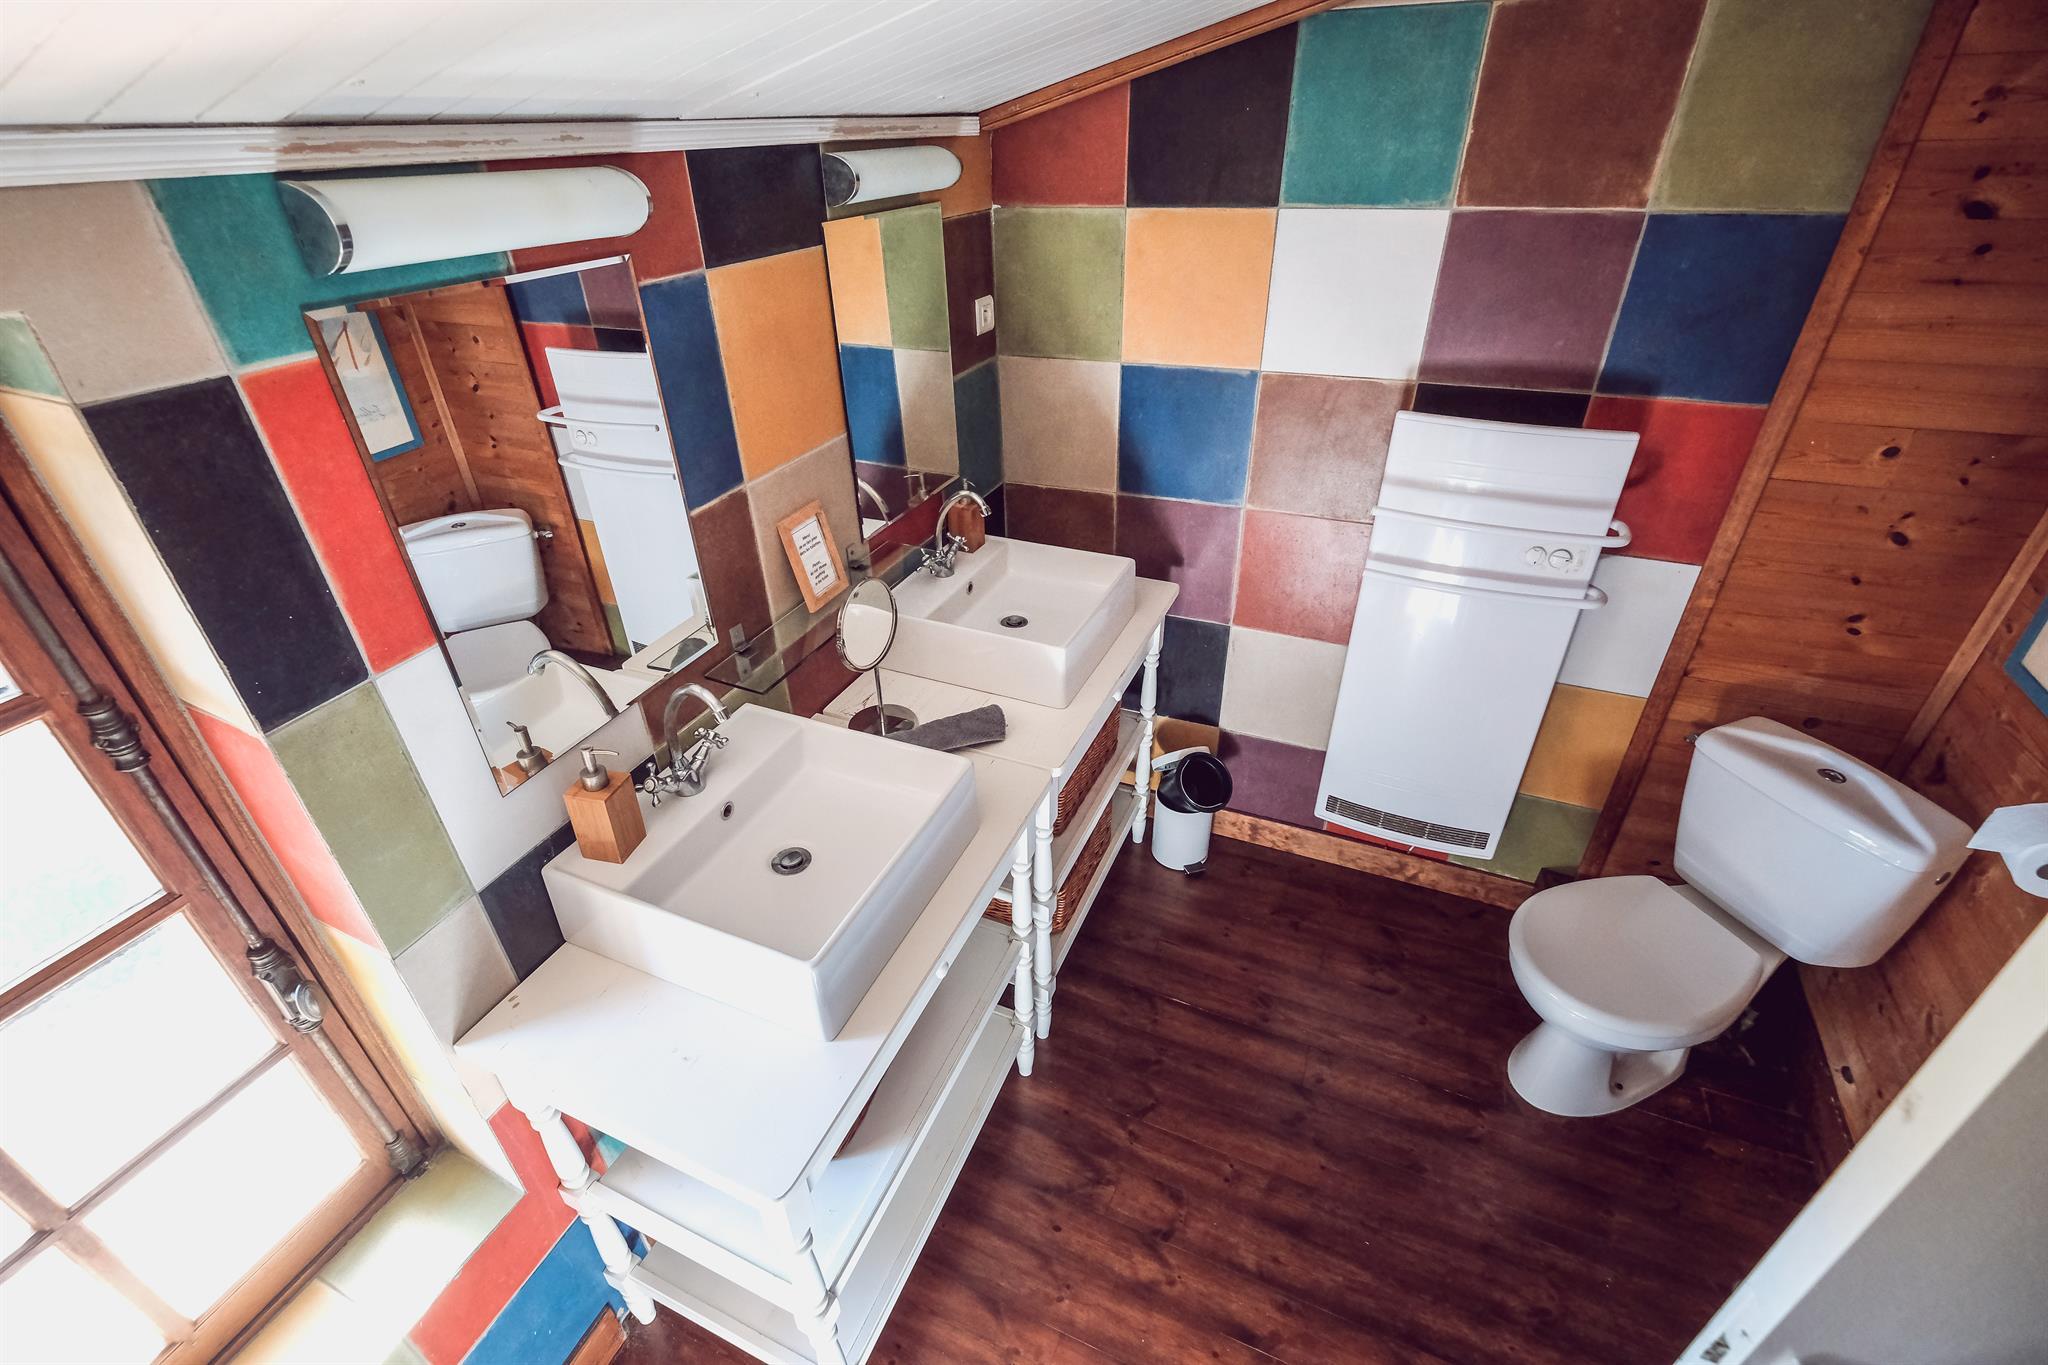 déco rétro wc - Recherche Google  Bathroom makeover, Bathroom interior,  Small bathroom